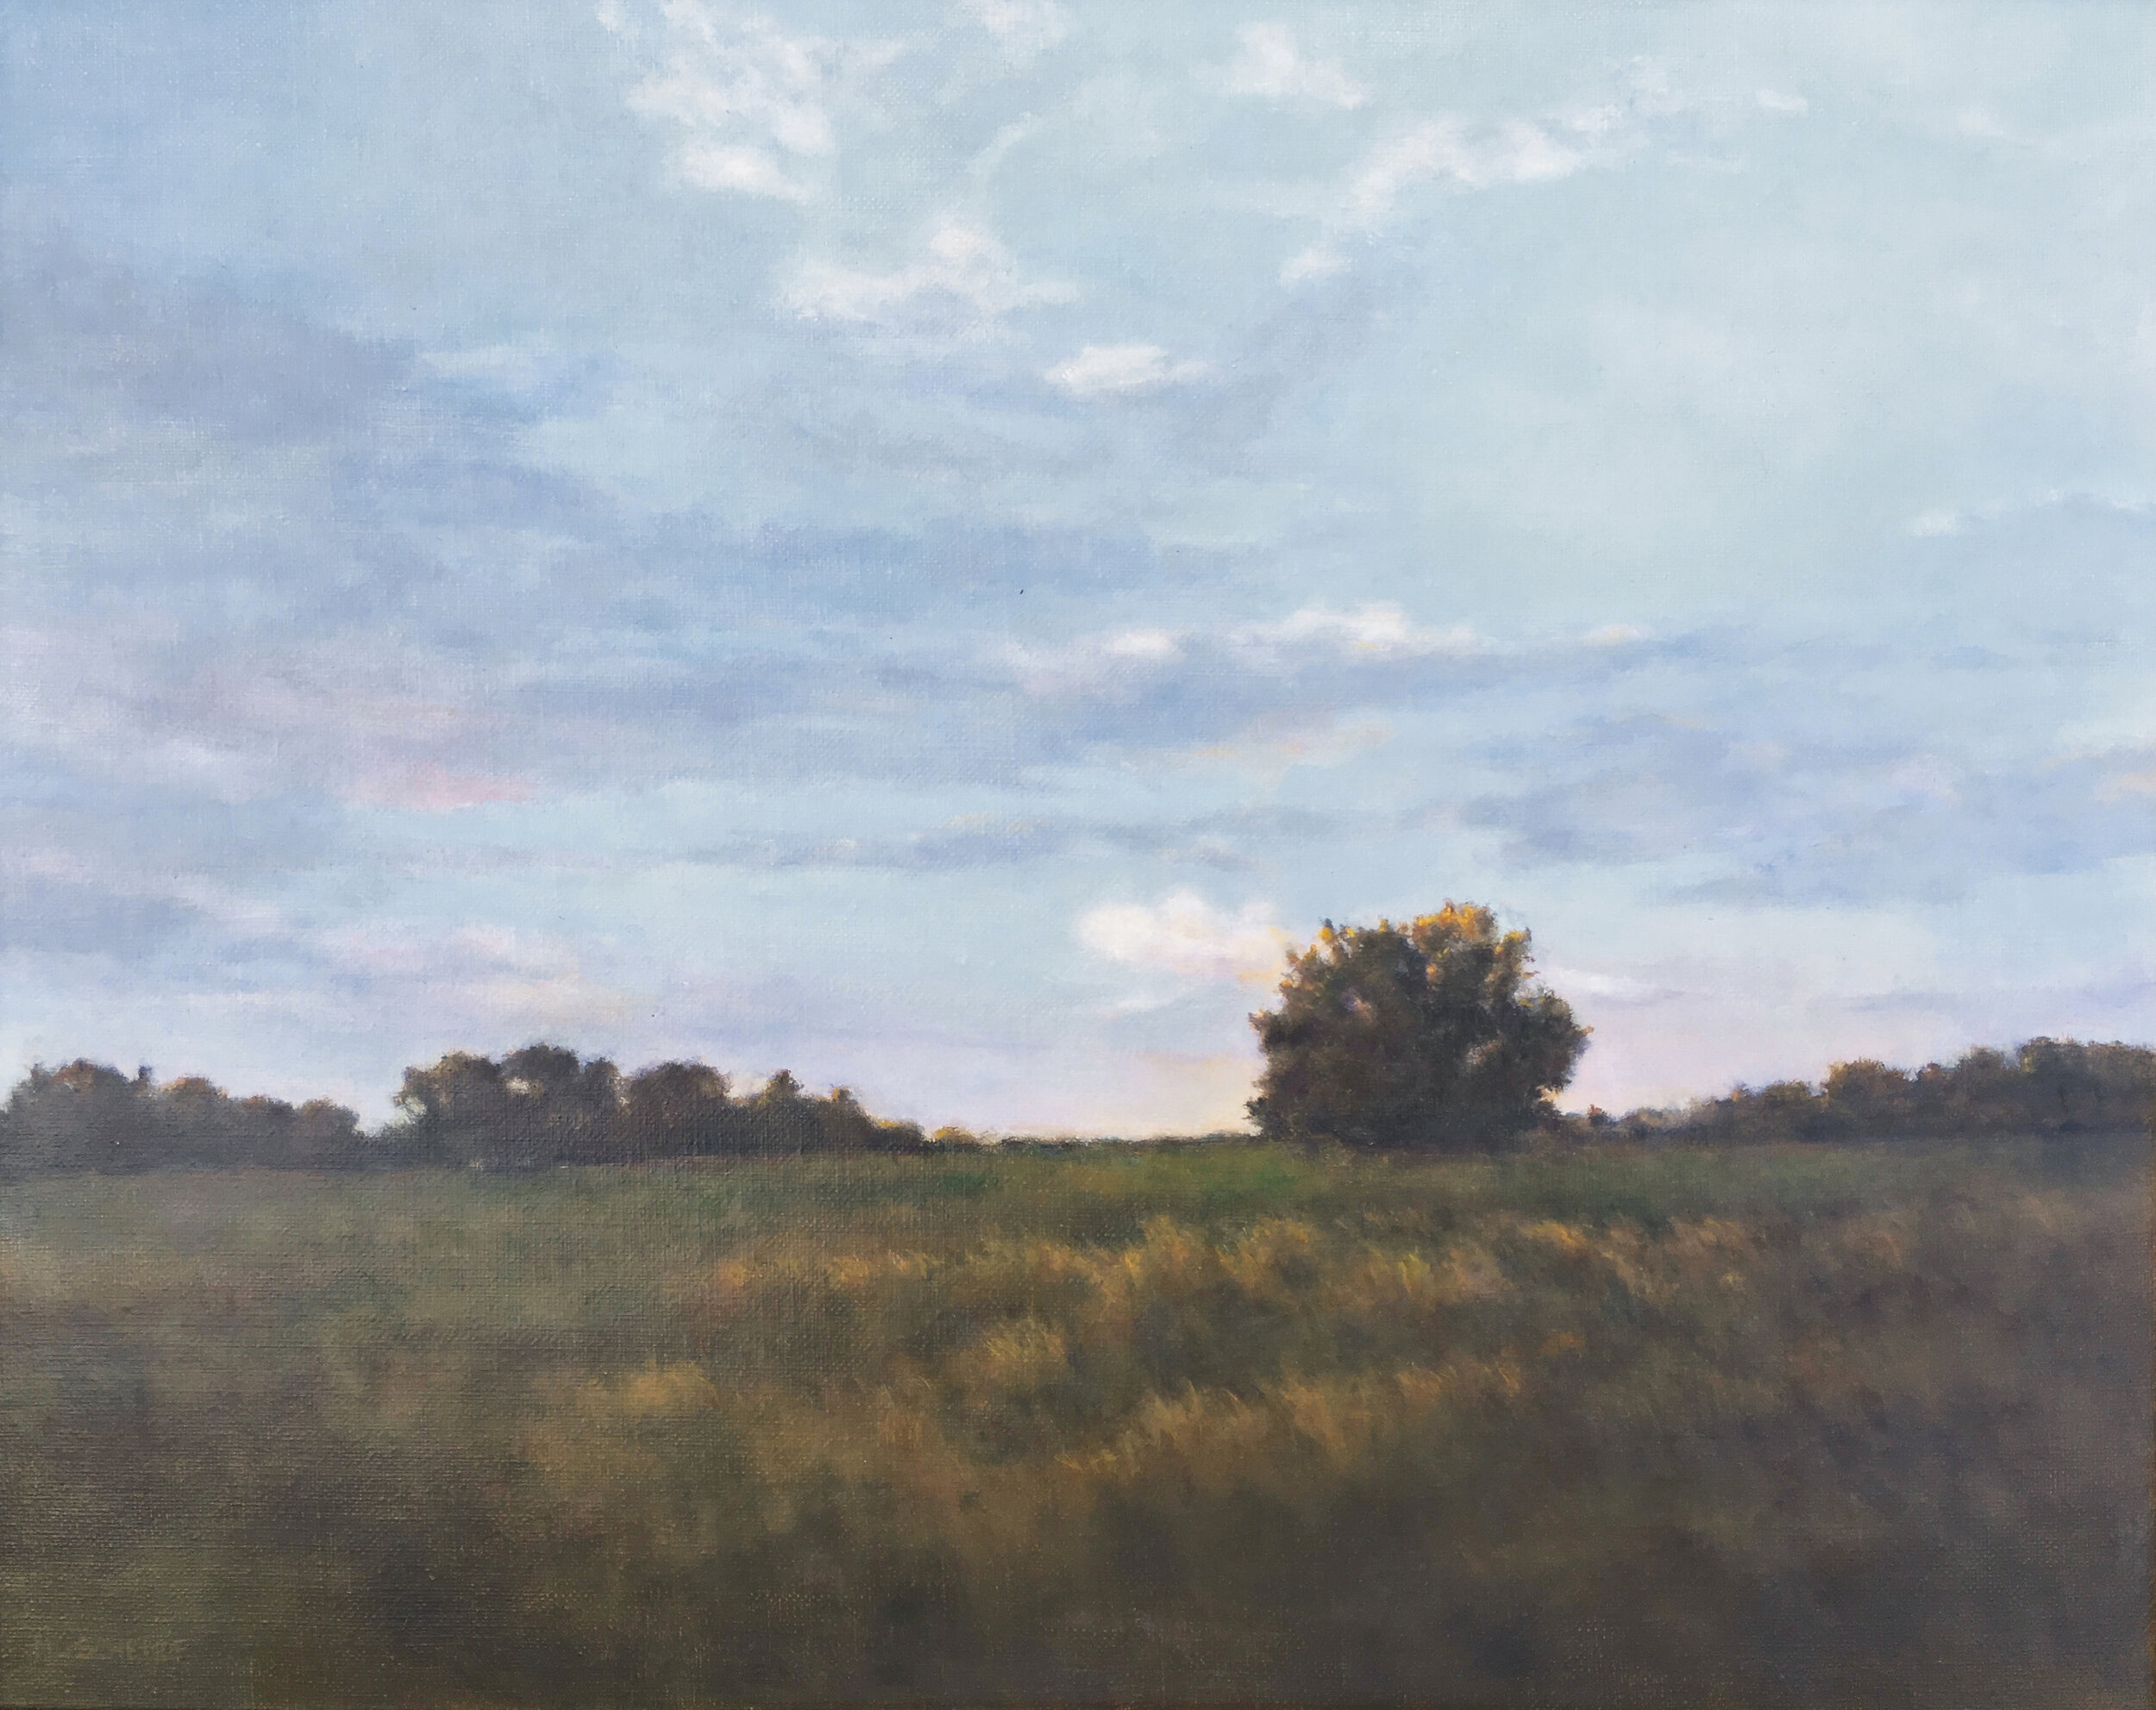  Mary Lou Schempf  Autumn Twilight,  16” x 20”, oil on linen   (available)  